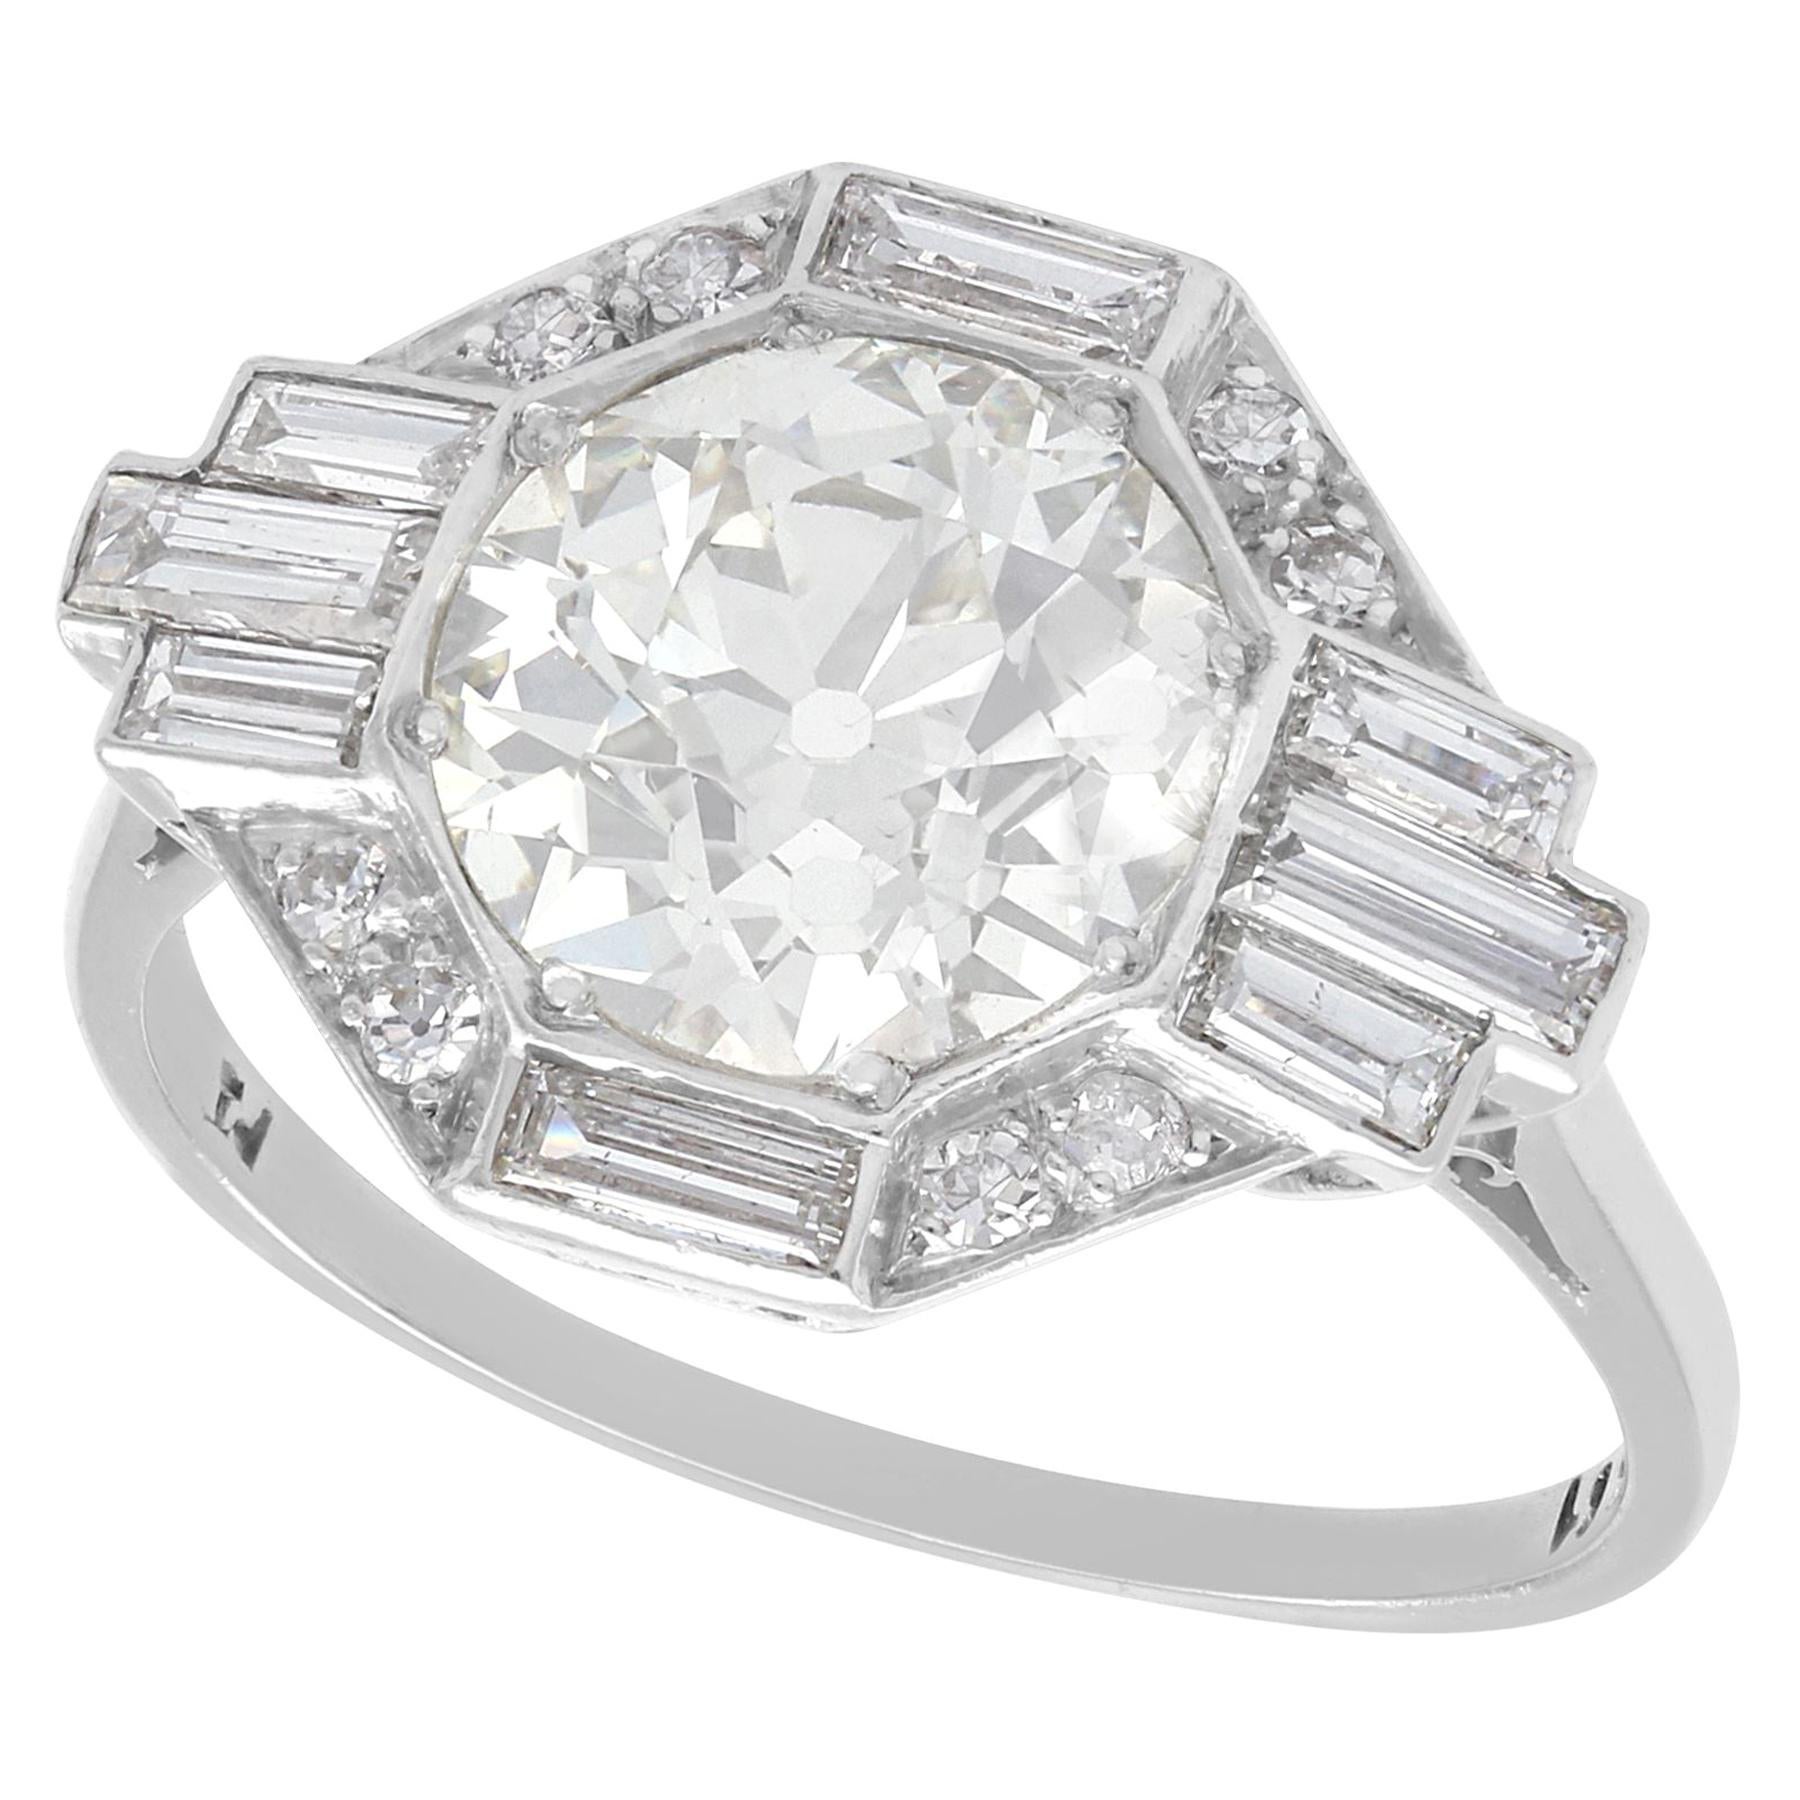 1930s Antique Art Deco 3.75 Carat Diamond and Platinum Engagement Ring